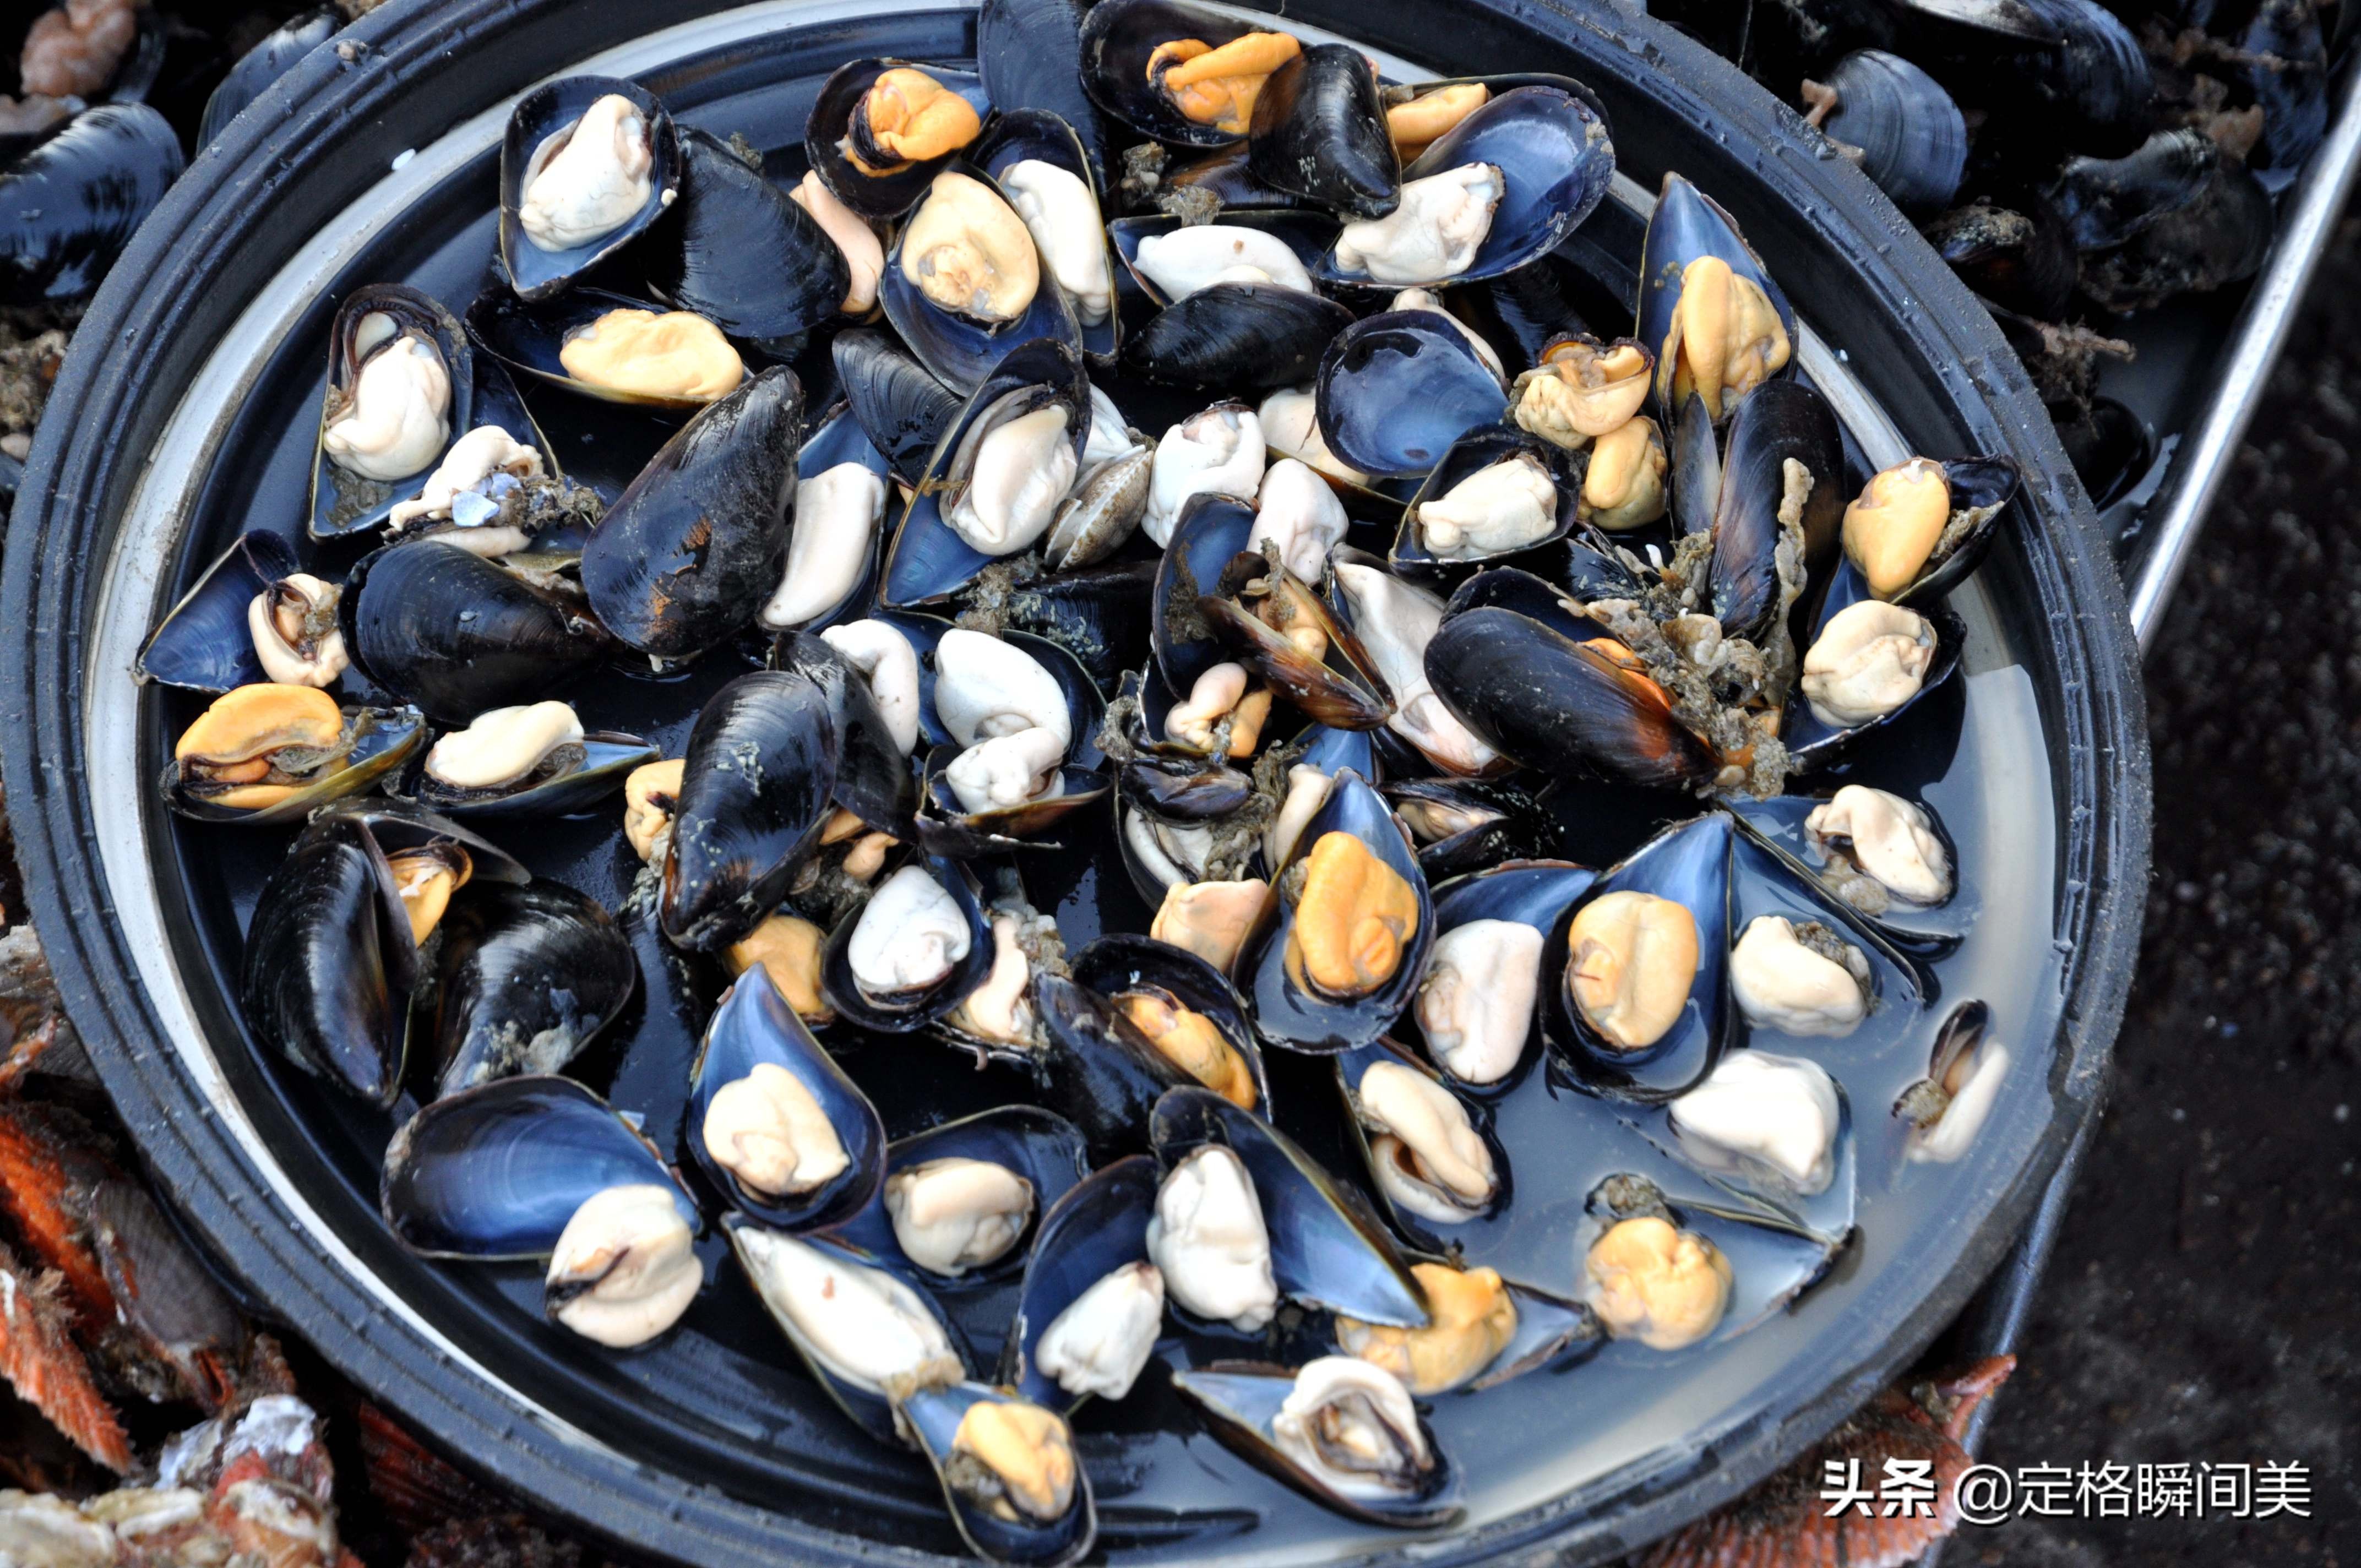 开春青岛贝类海鲜喜获丰收 海虹白菜价10元5斤 面条鱼10元2斤